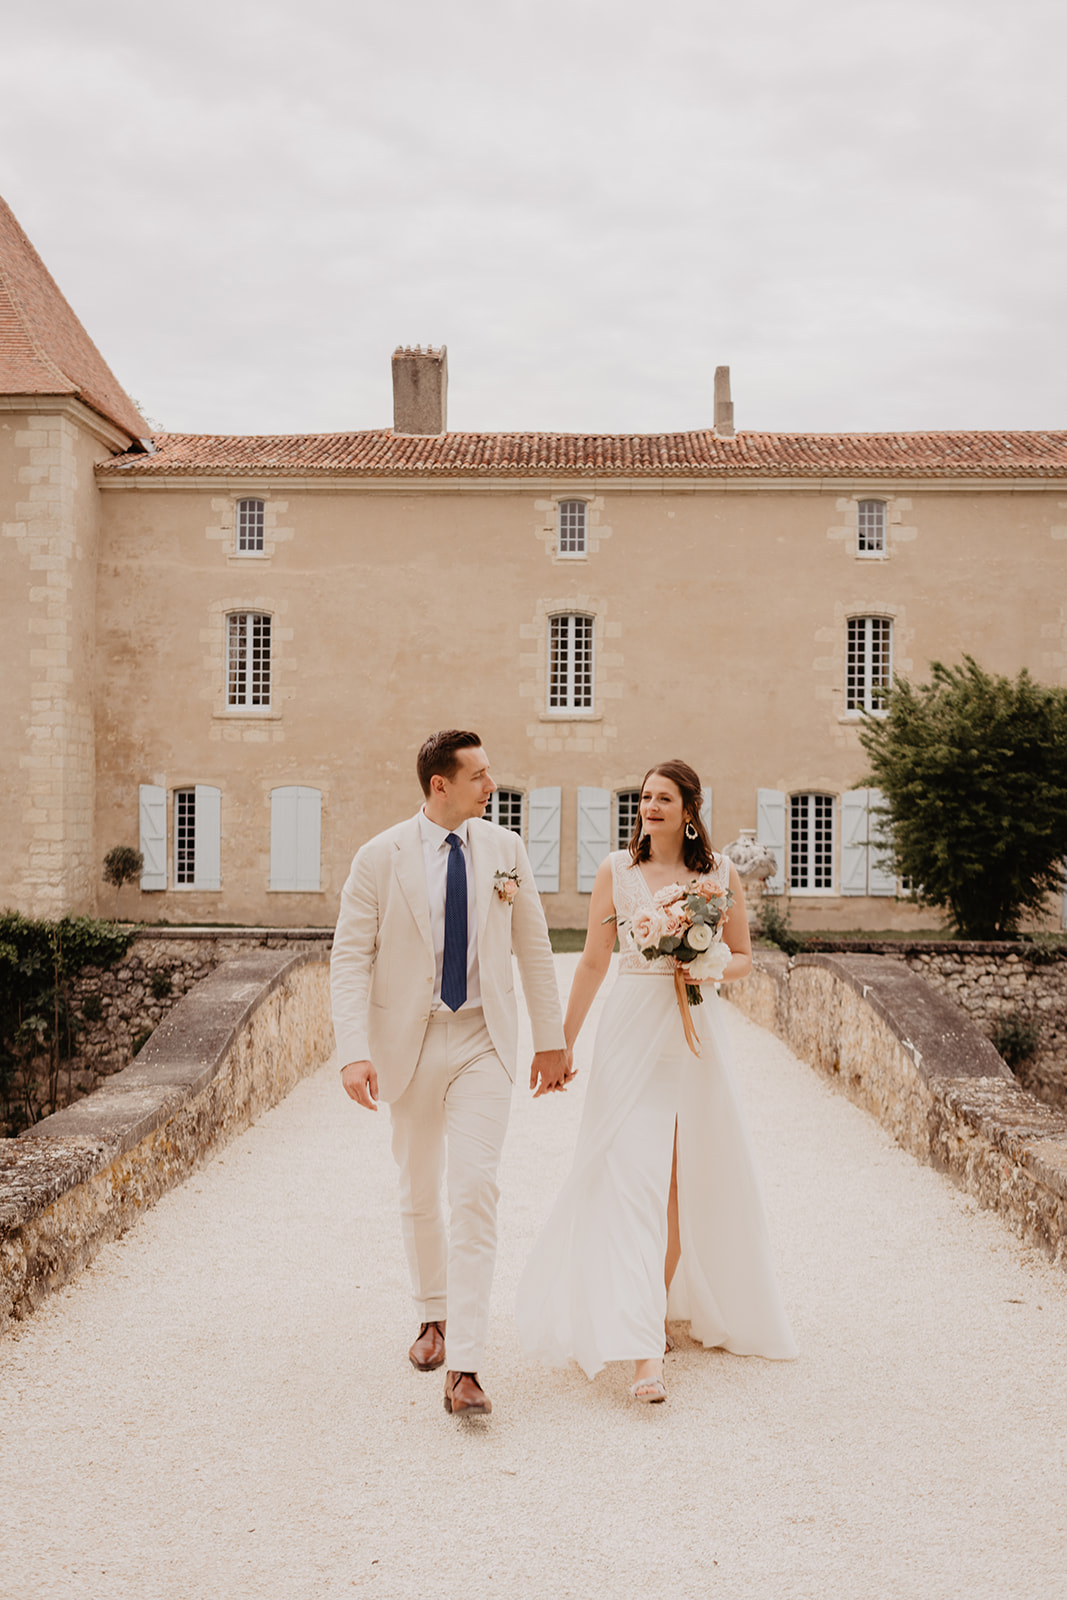 Mariage printanier Dordogne et du Périgord Vert, Château de la Mothe, seance couple, photos et films duo bordeaux